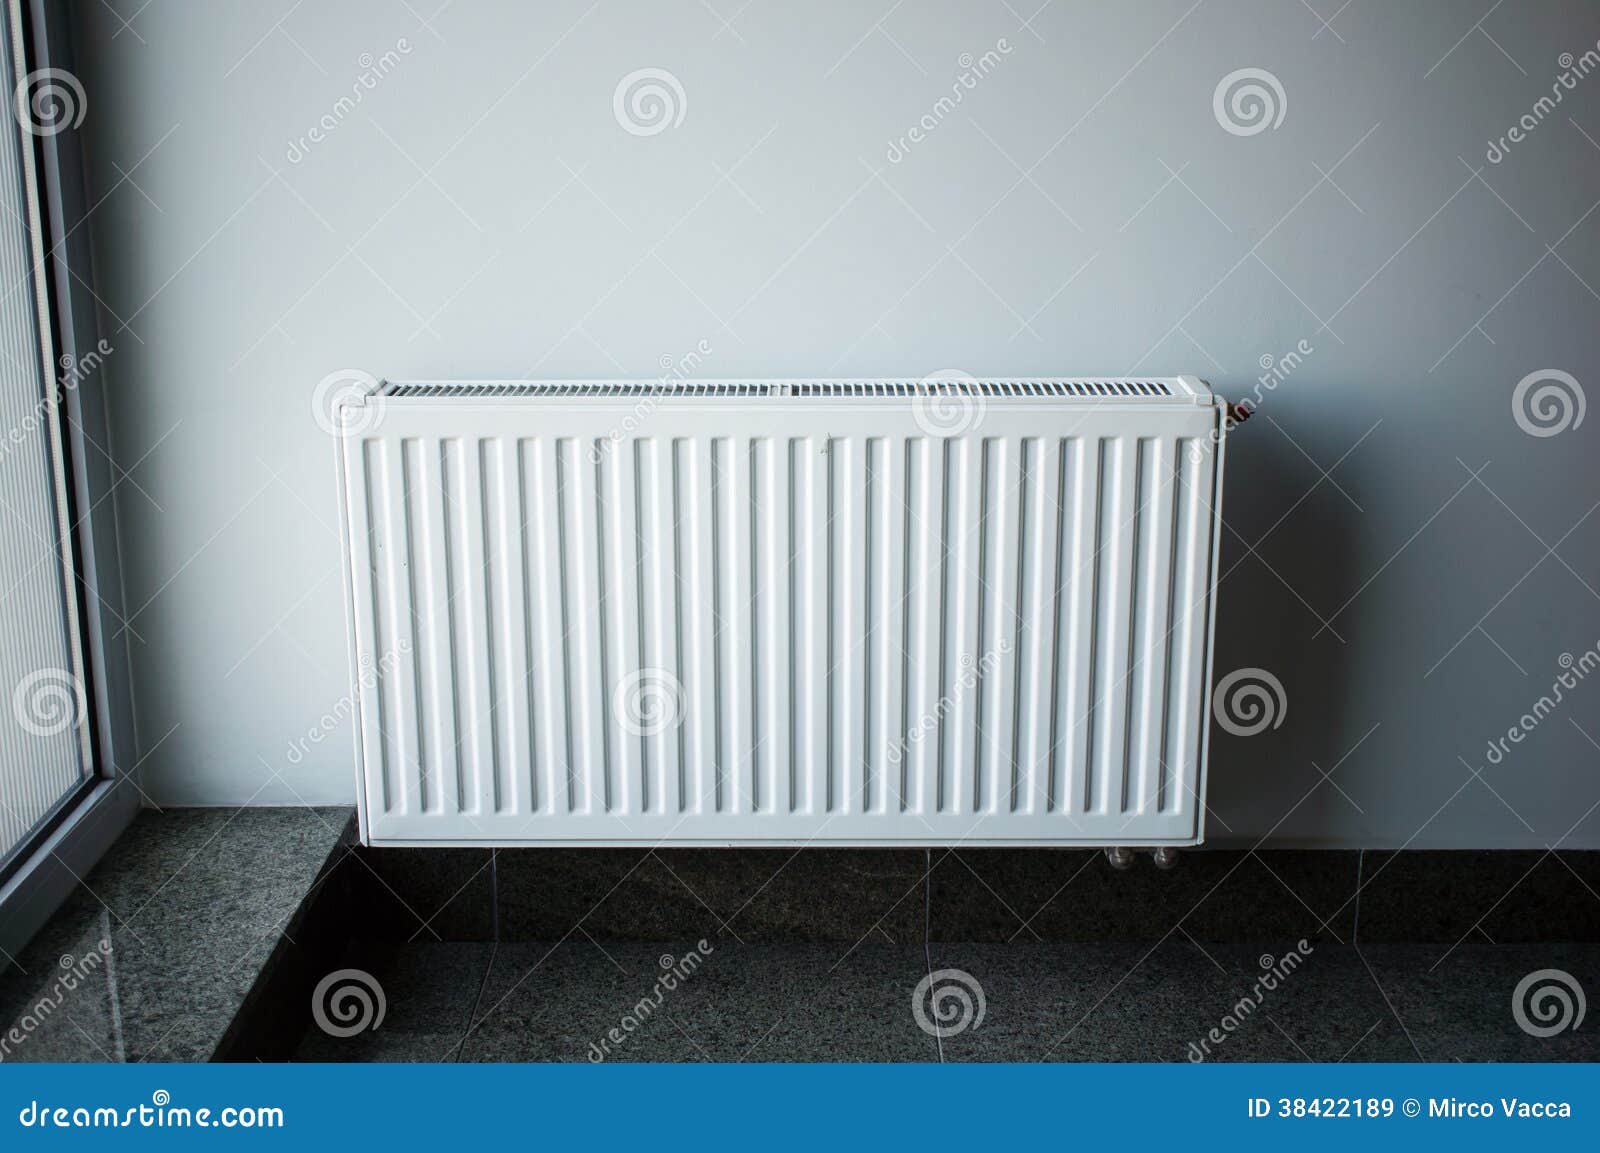 vervagen Gang Misschien Witte Radiator stock afbeelding. Image of verwarmingstoestel - 38422189